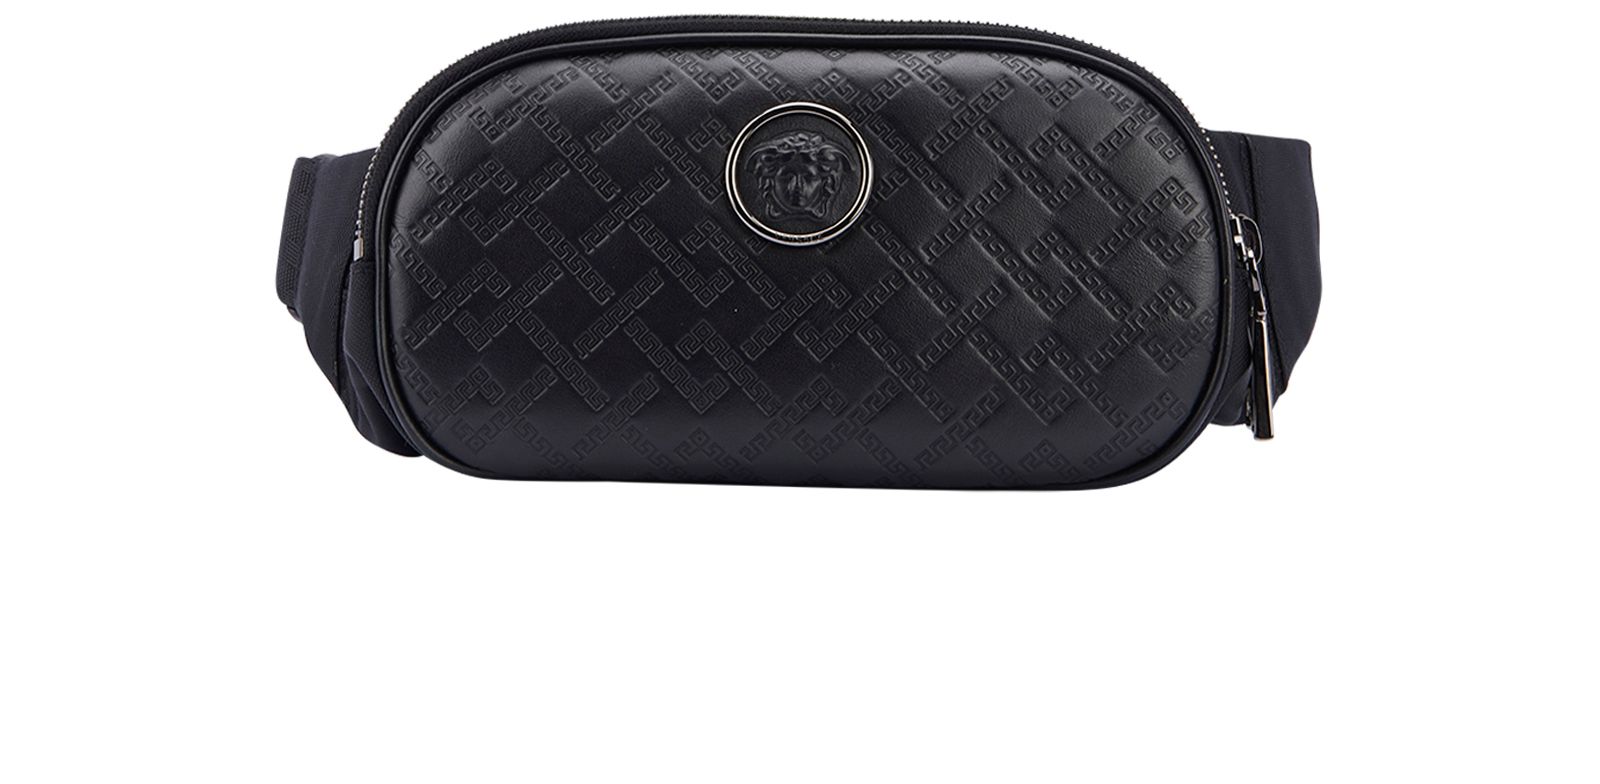 Versace Black Greek Key-Embossed Belt Bag Versace